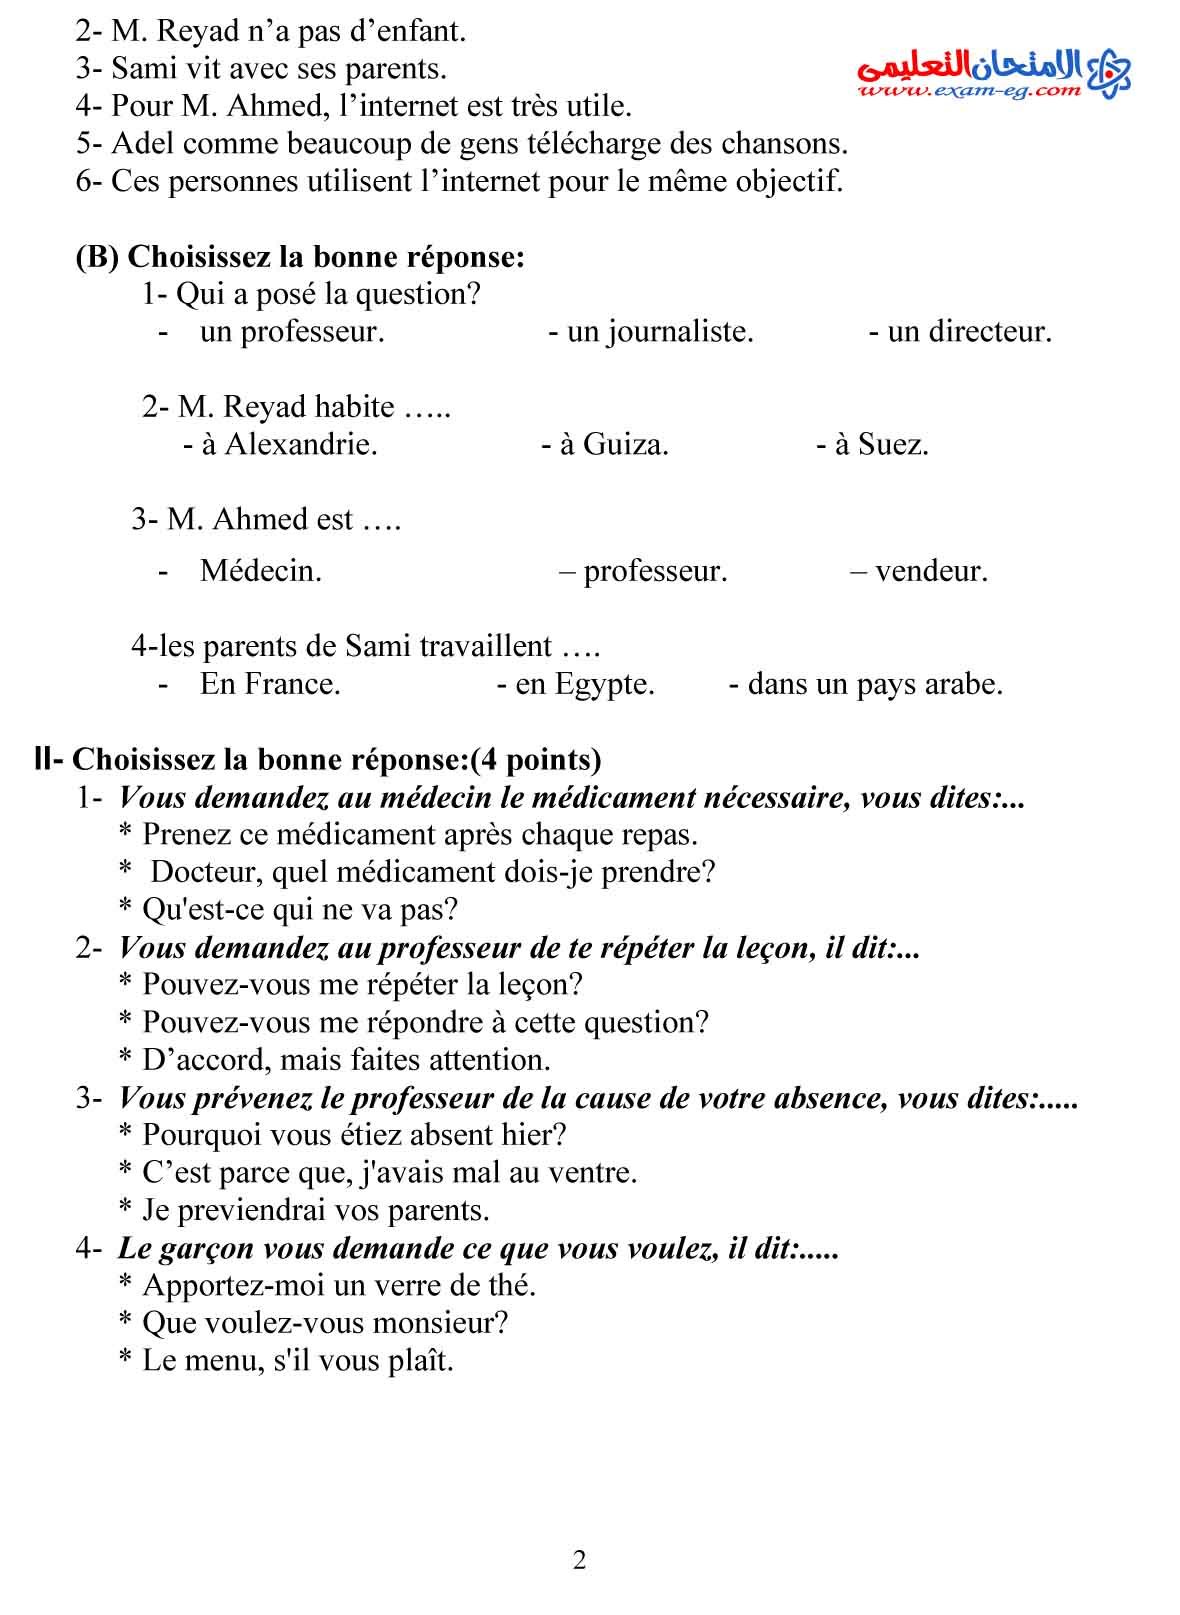 لغة فرنسية 2 - مدرسة اون لاين-2